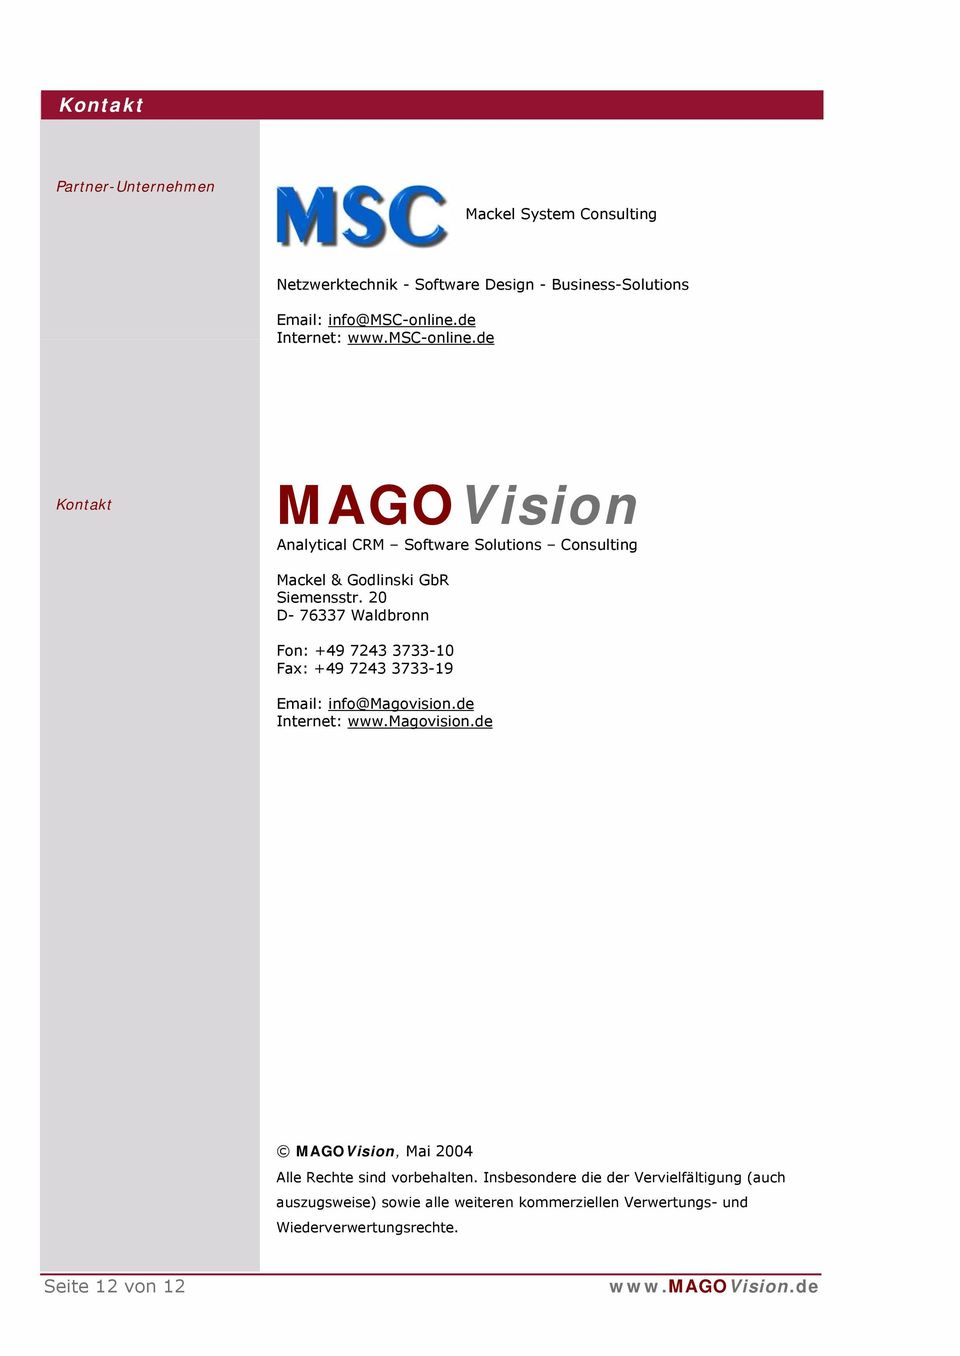 20 D- 76337 Waldbronn Fon: +49 7243 3733-10 Fax: +49 7243 3733-19 Email: info@magovision.de Internet: www.magovision.de MAGOVision, Mai 2004 Alle Rechte sind vorbehalten.